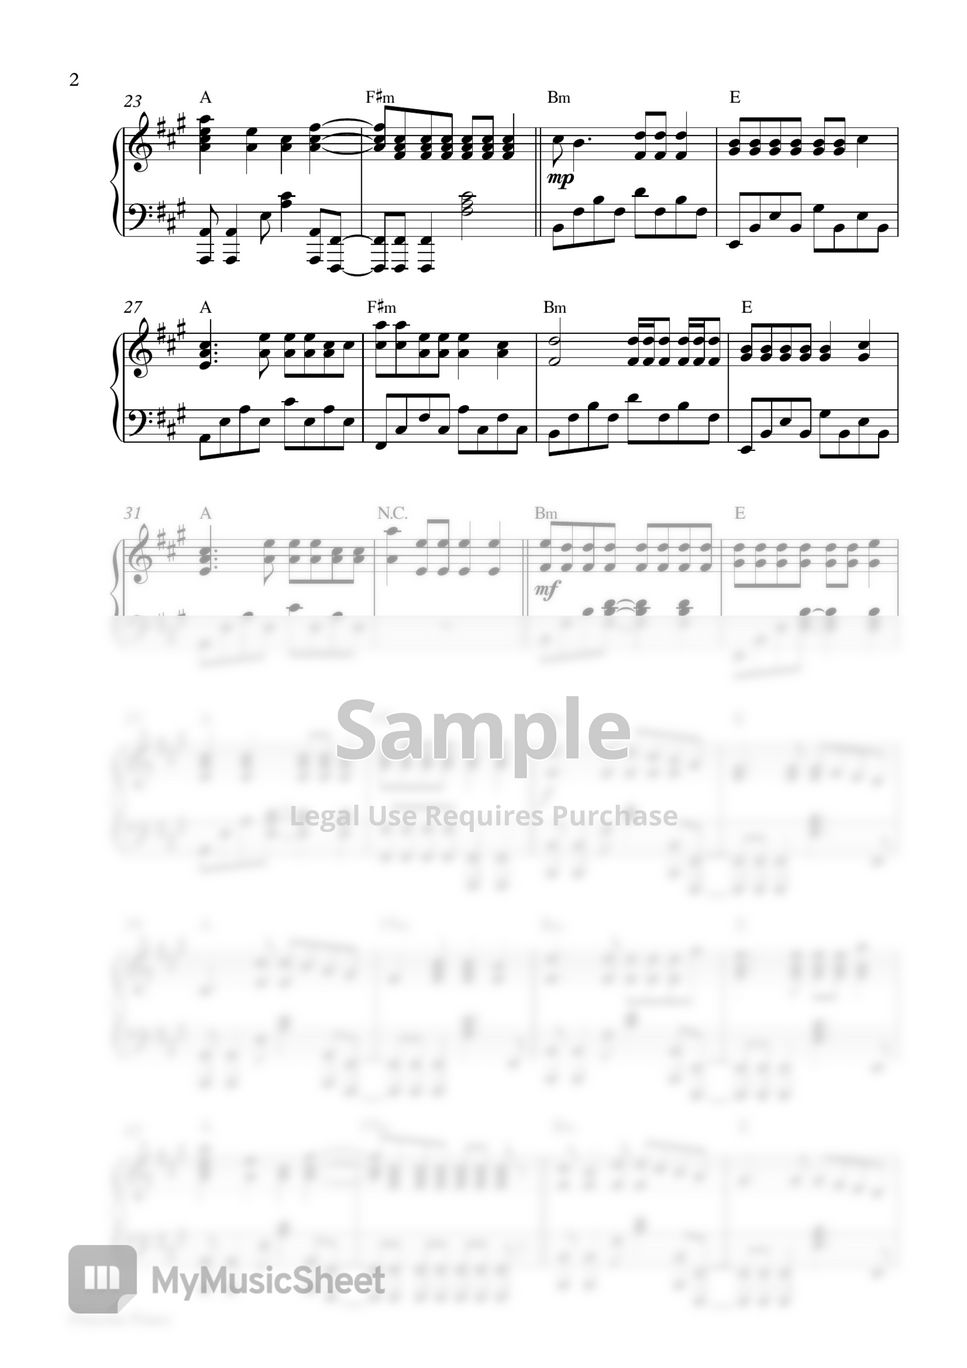 Imagine Dragons - Follow You (Piano Sheet) by Pianella Piano